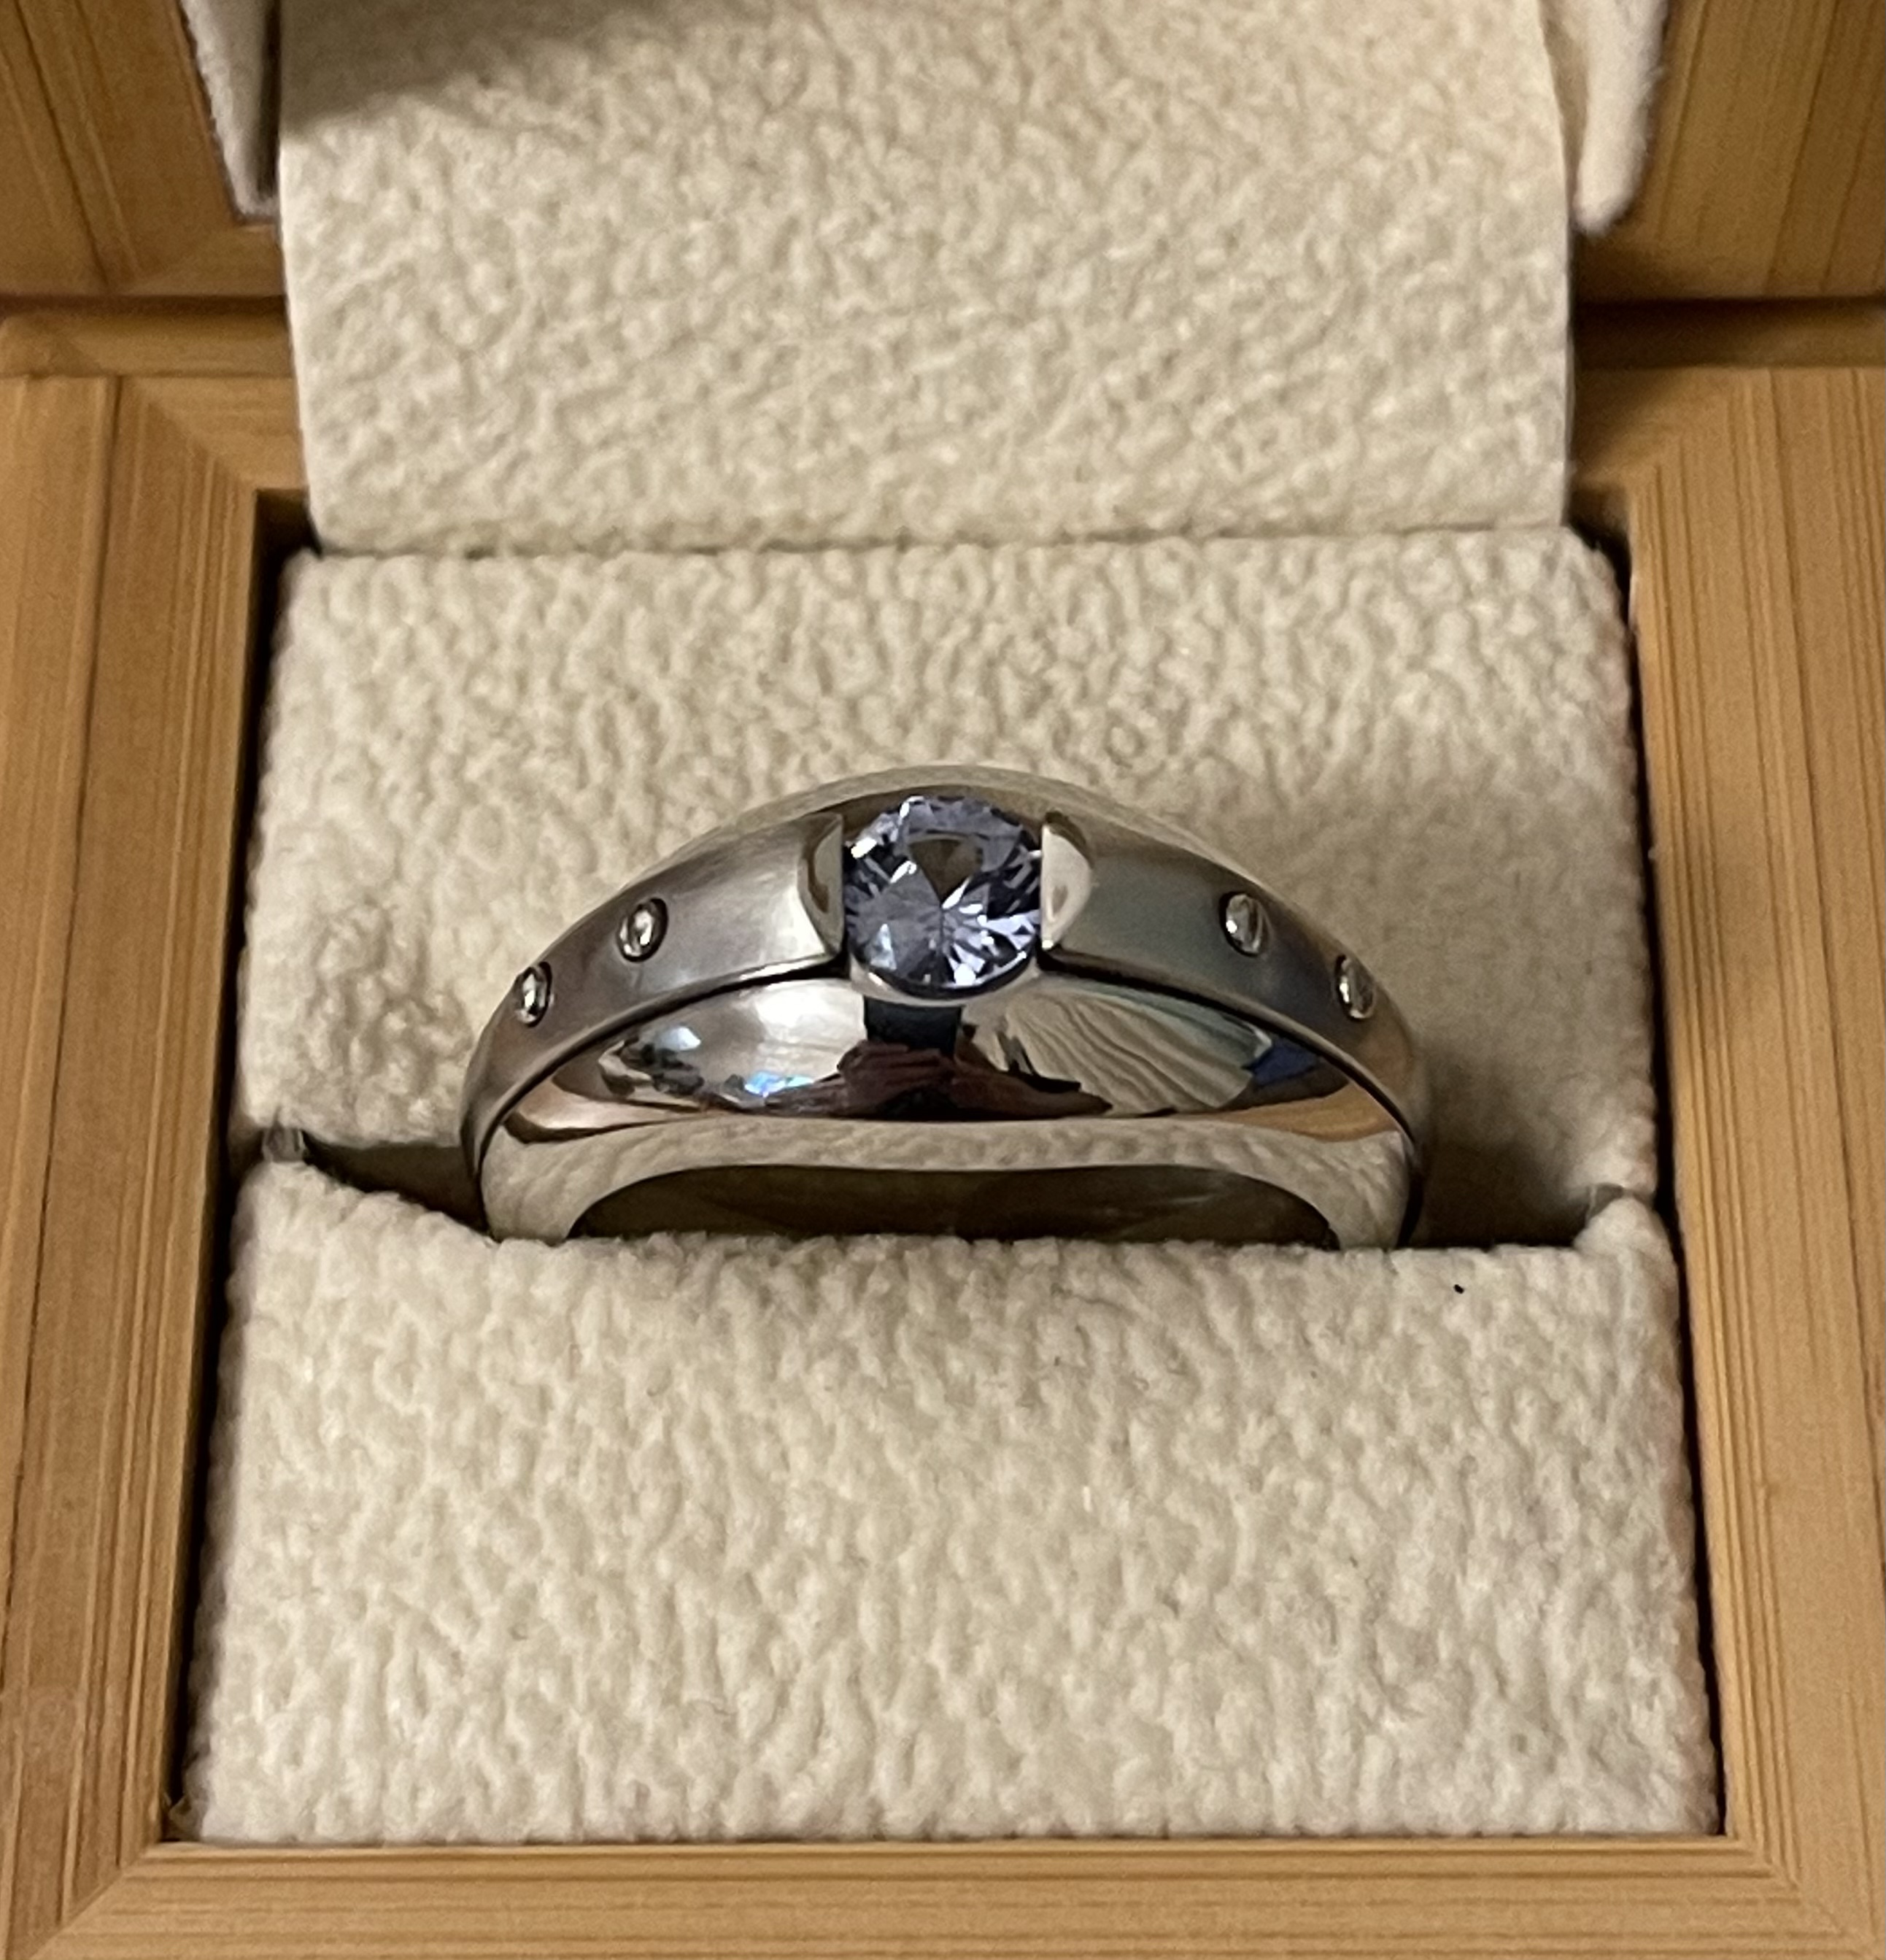 Мужское кольцо с сапфиром(0,90 ct.) из палладия 850 пробы